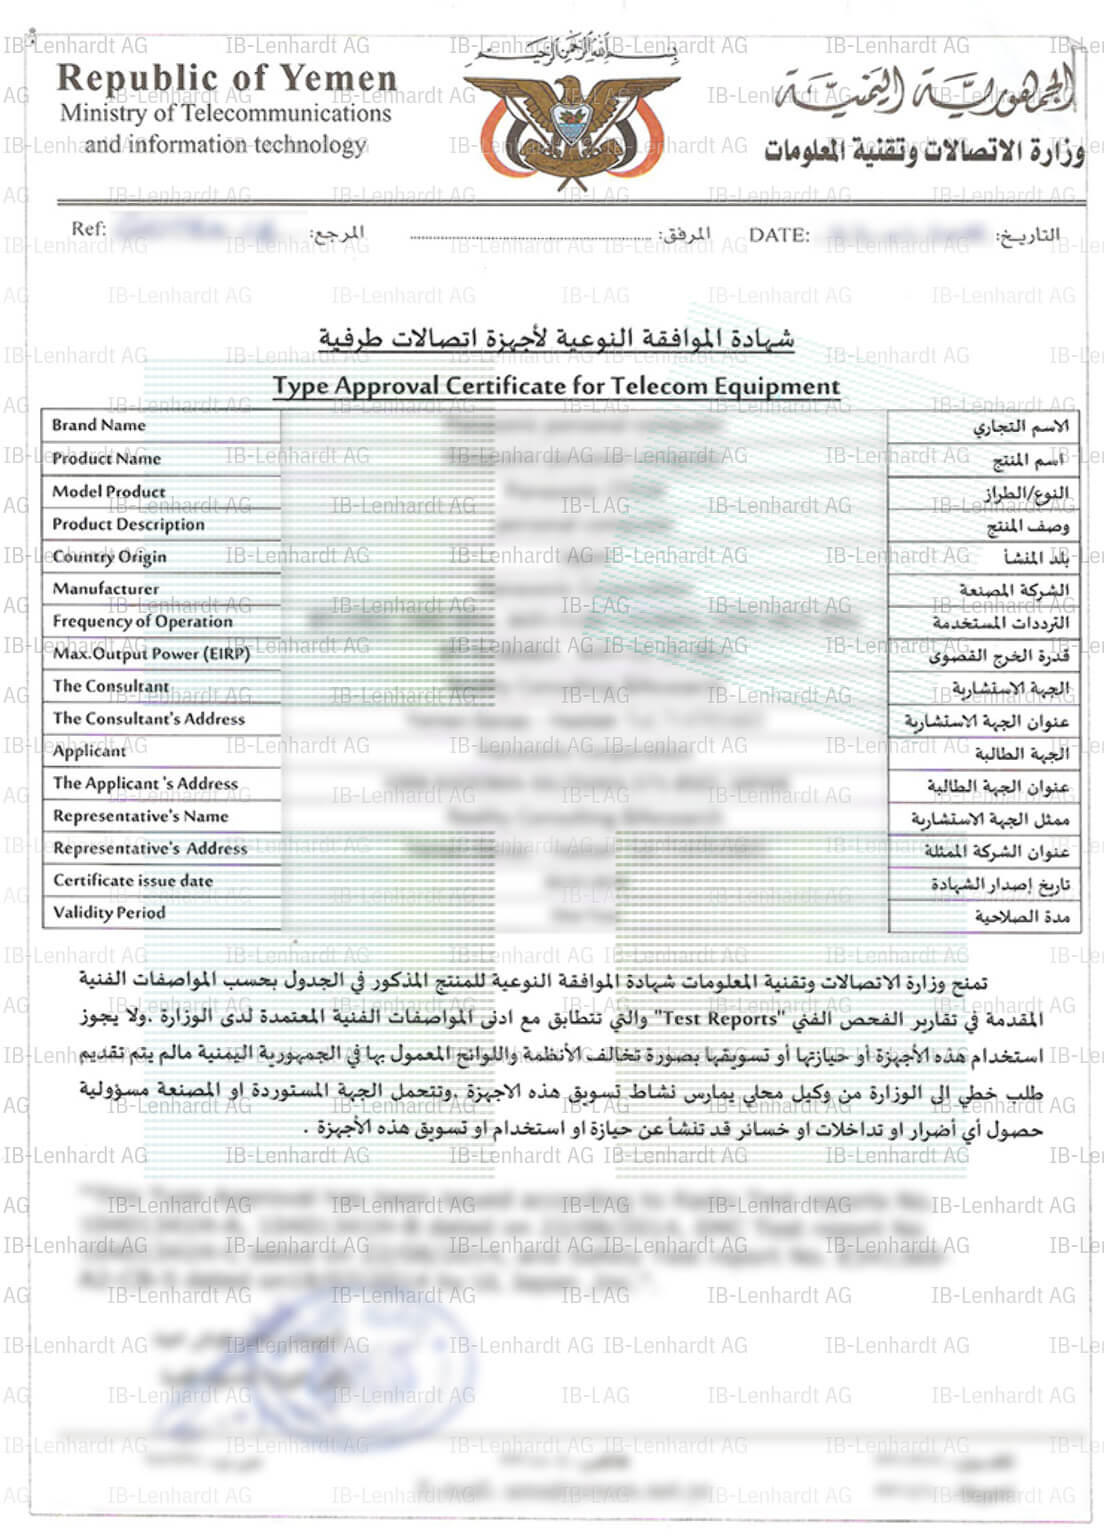 認証書の例 イエメン